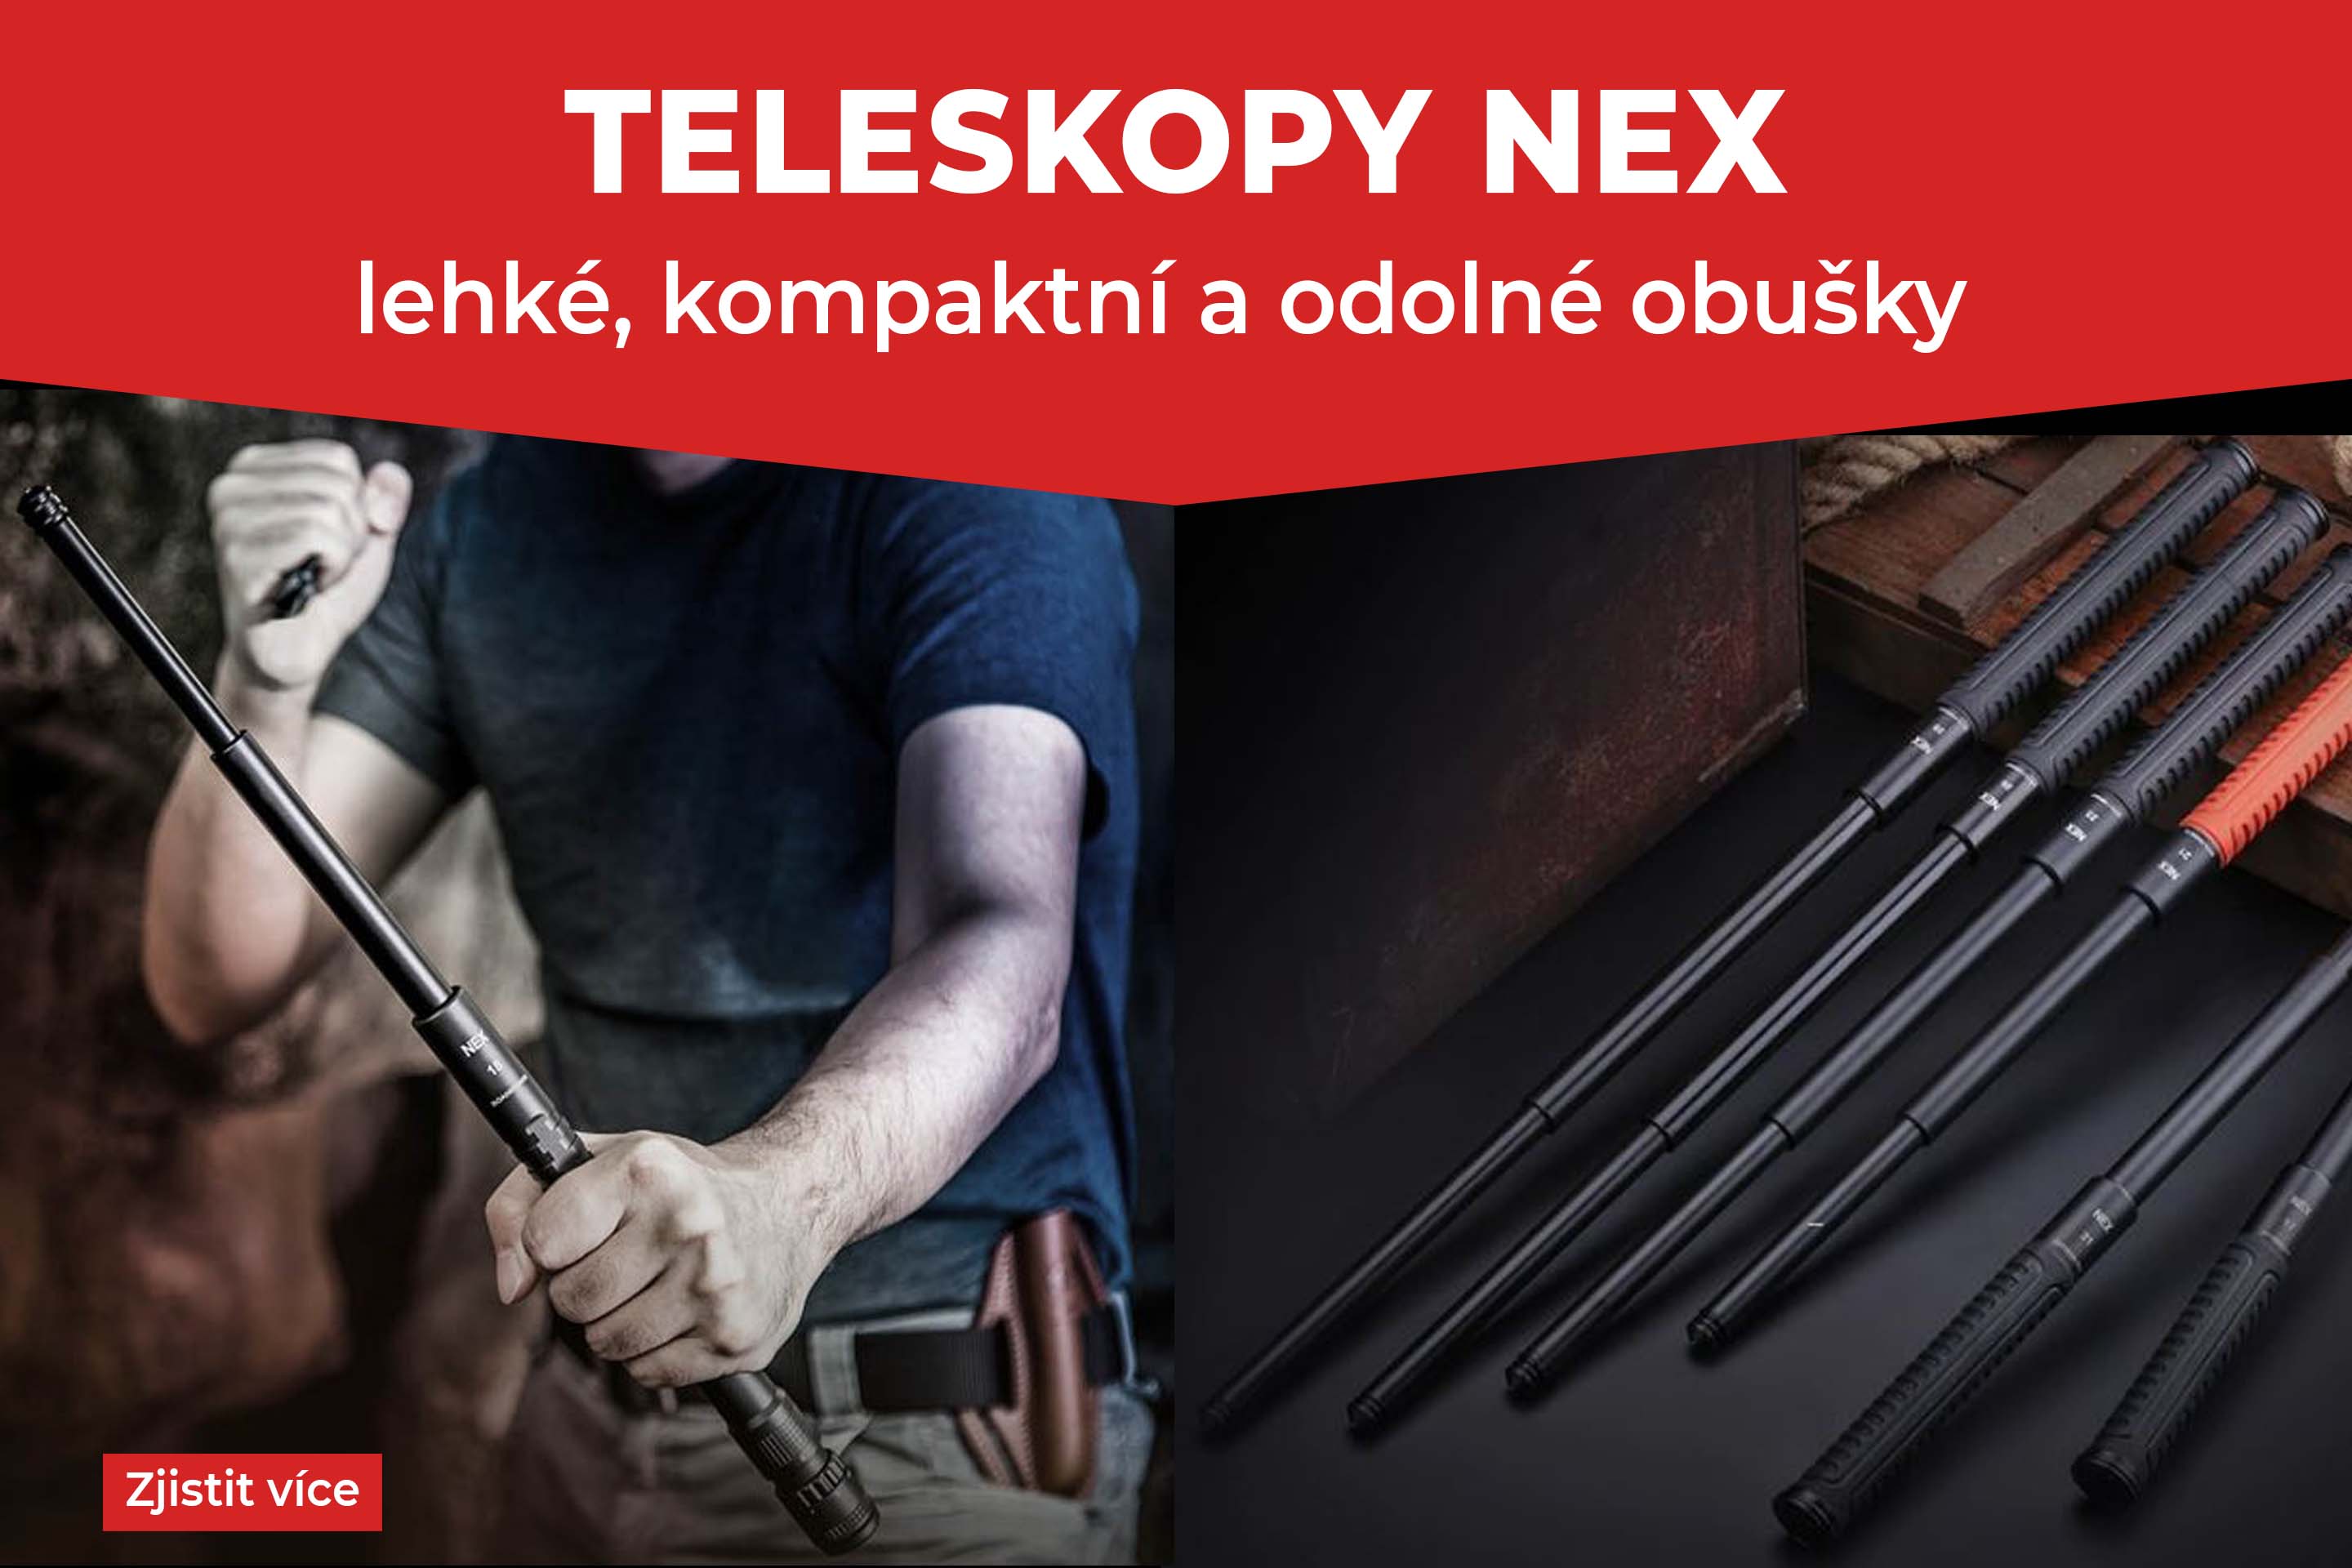 TELESKOPY NEX | Defendia.cz